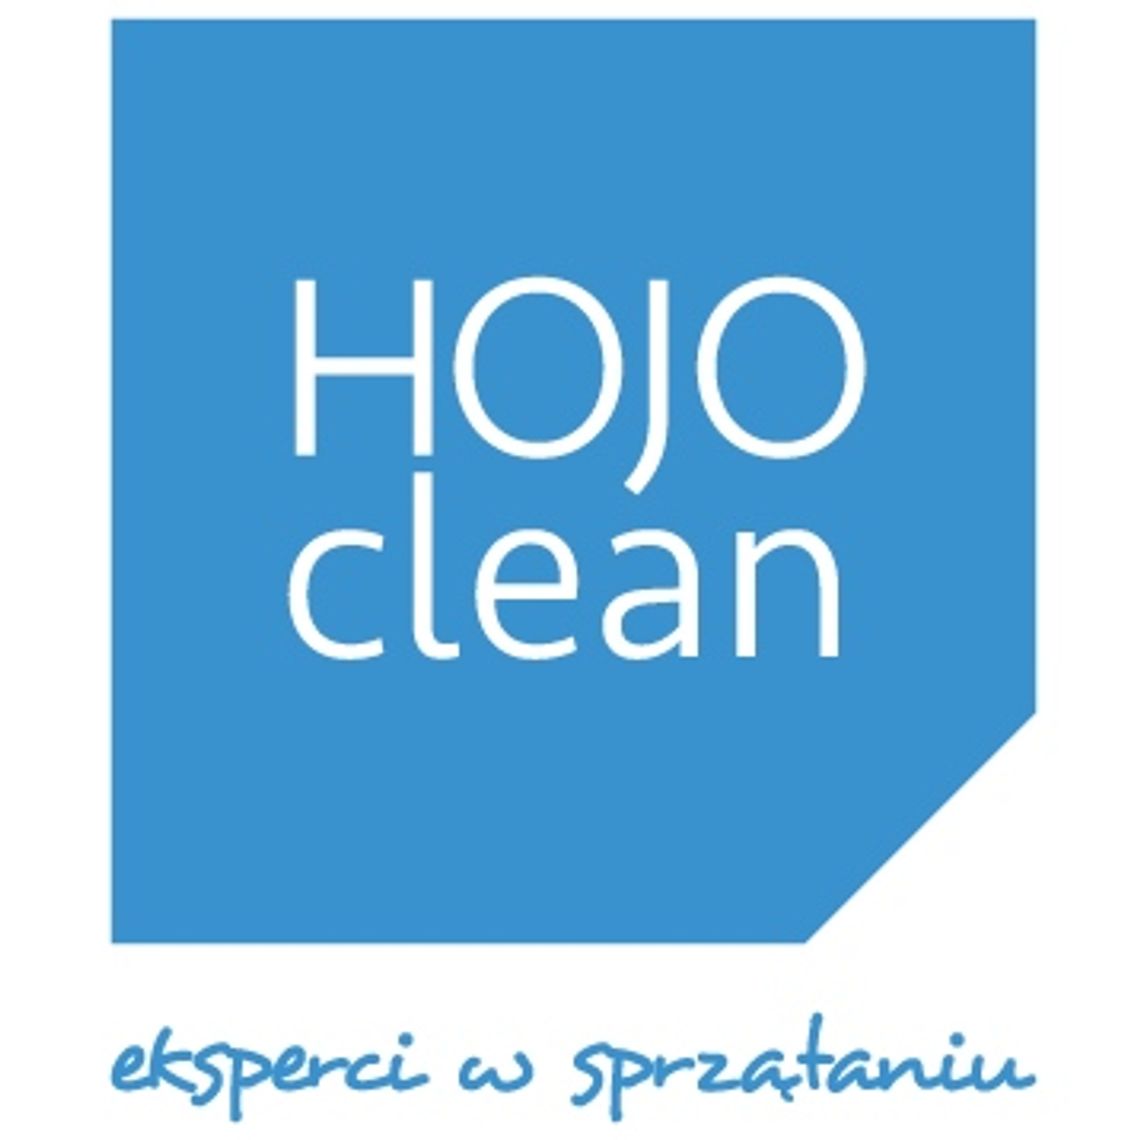 hojoclean.pl - eksperci w sprzątaniu